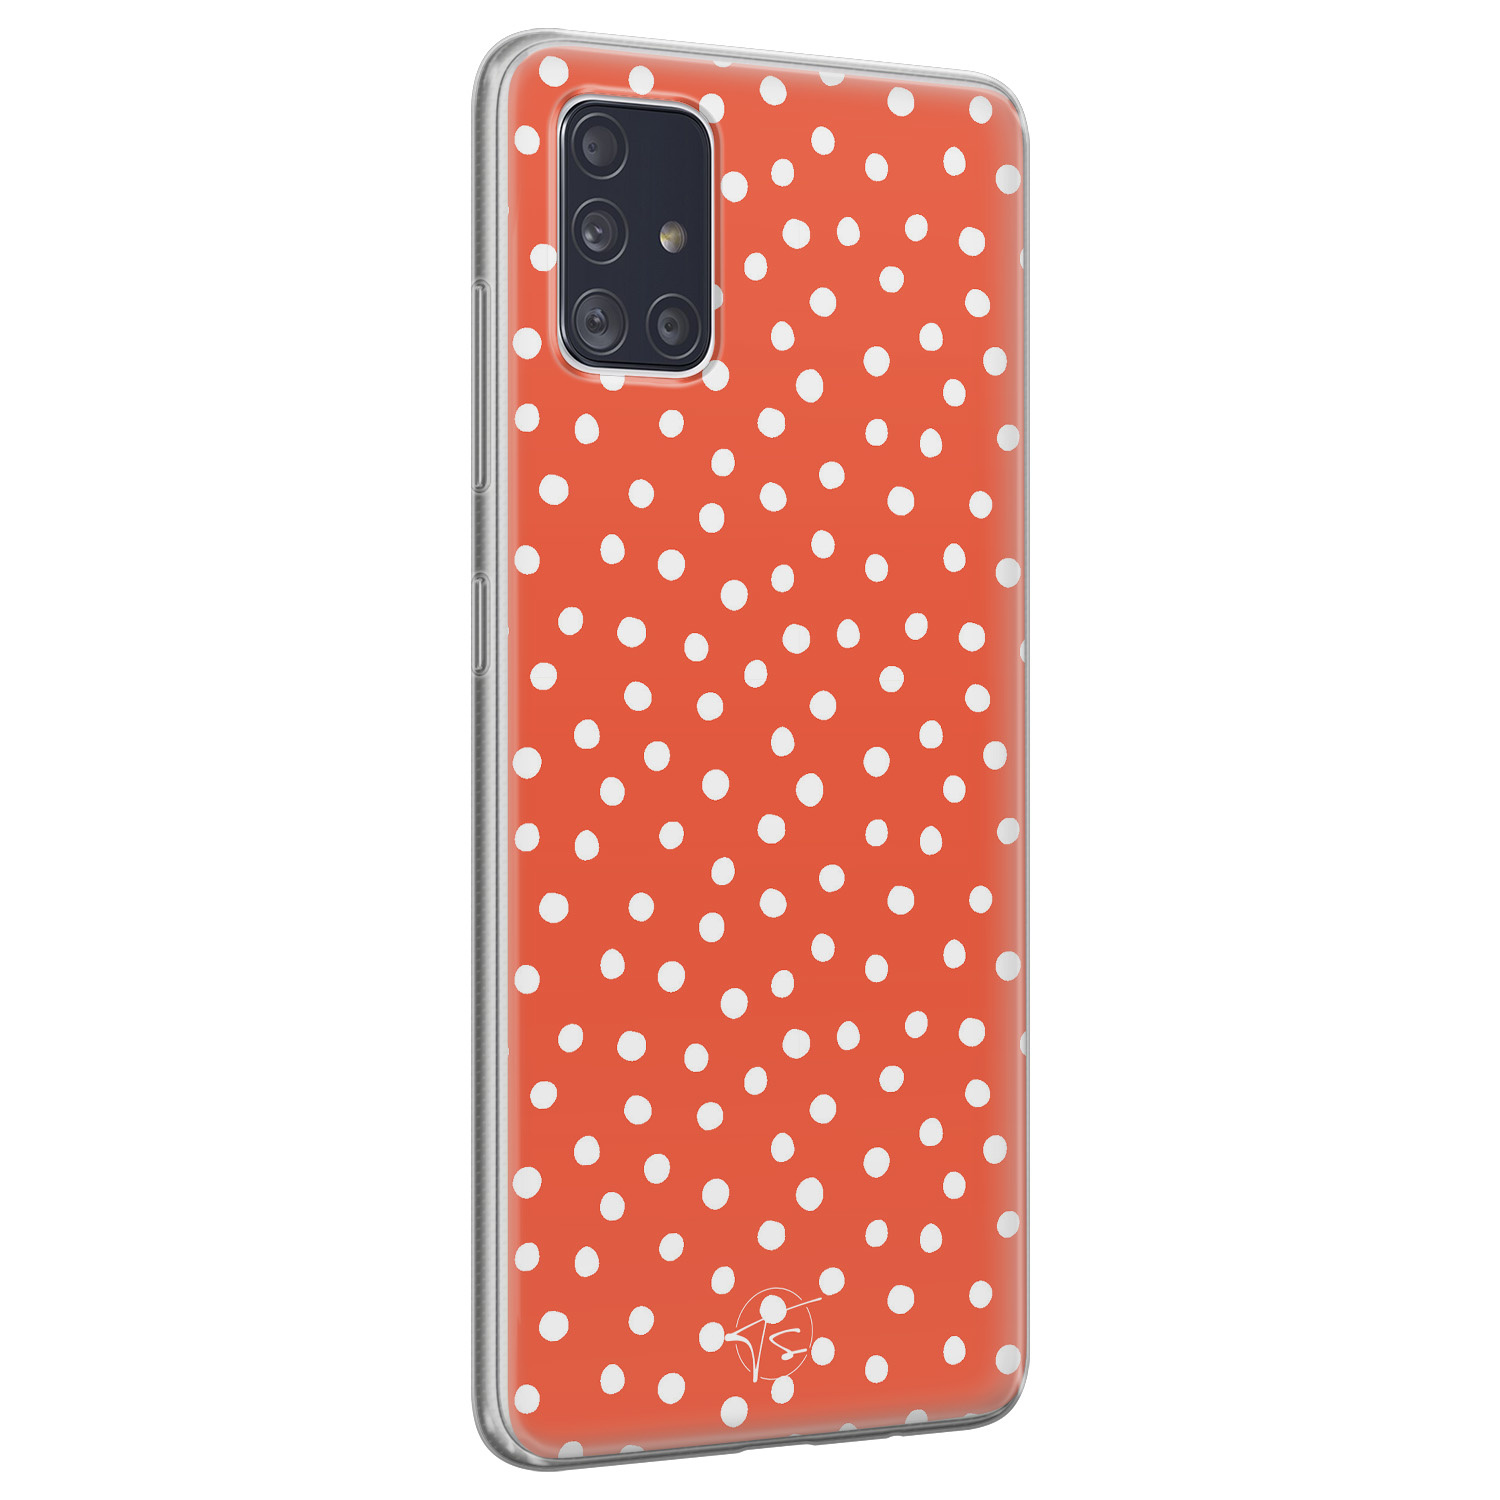 Telefoonhoesje Store Samsung Galaxy A71 siliconen hoesje - Orange dots